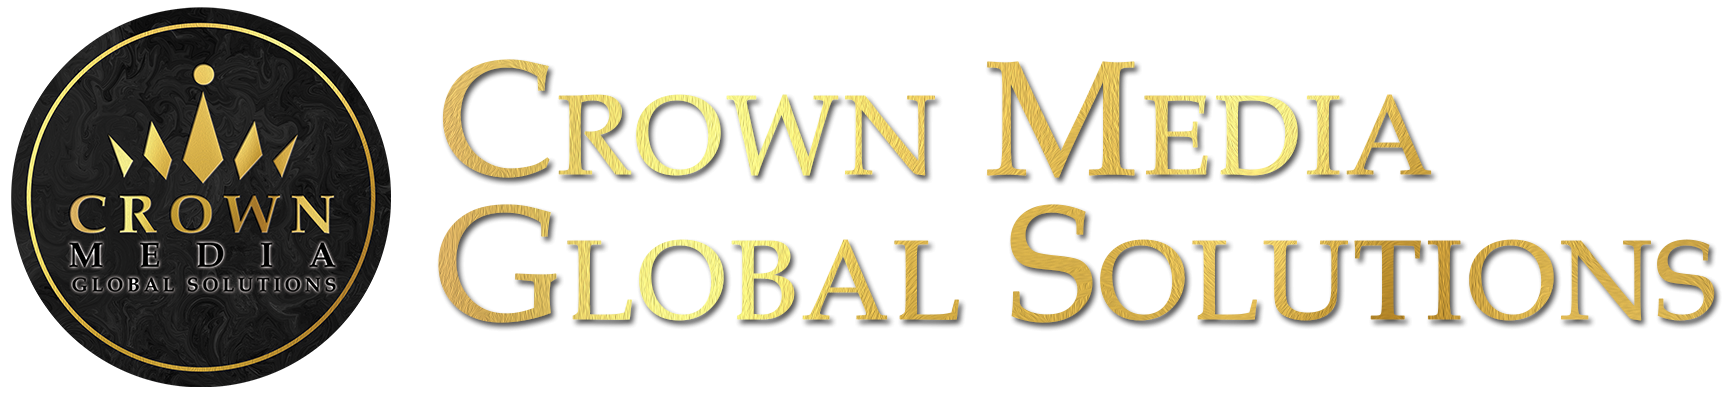 Crown Media Global Solutions